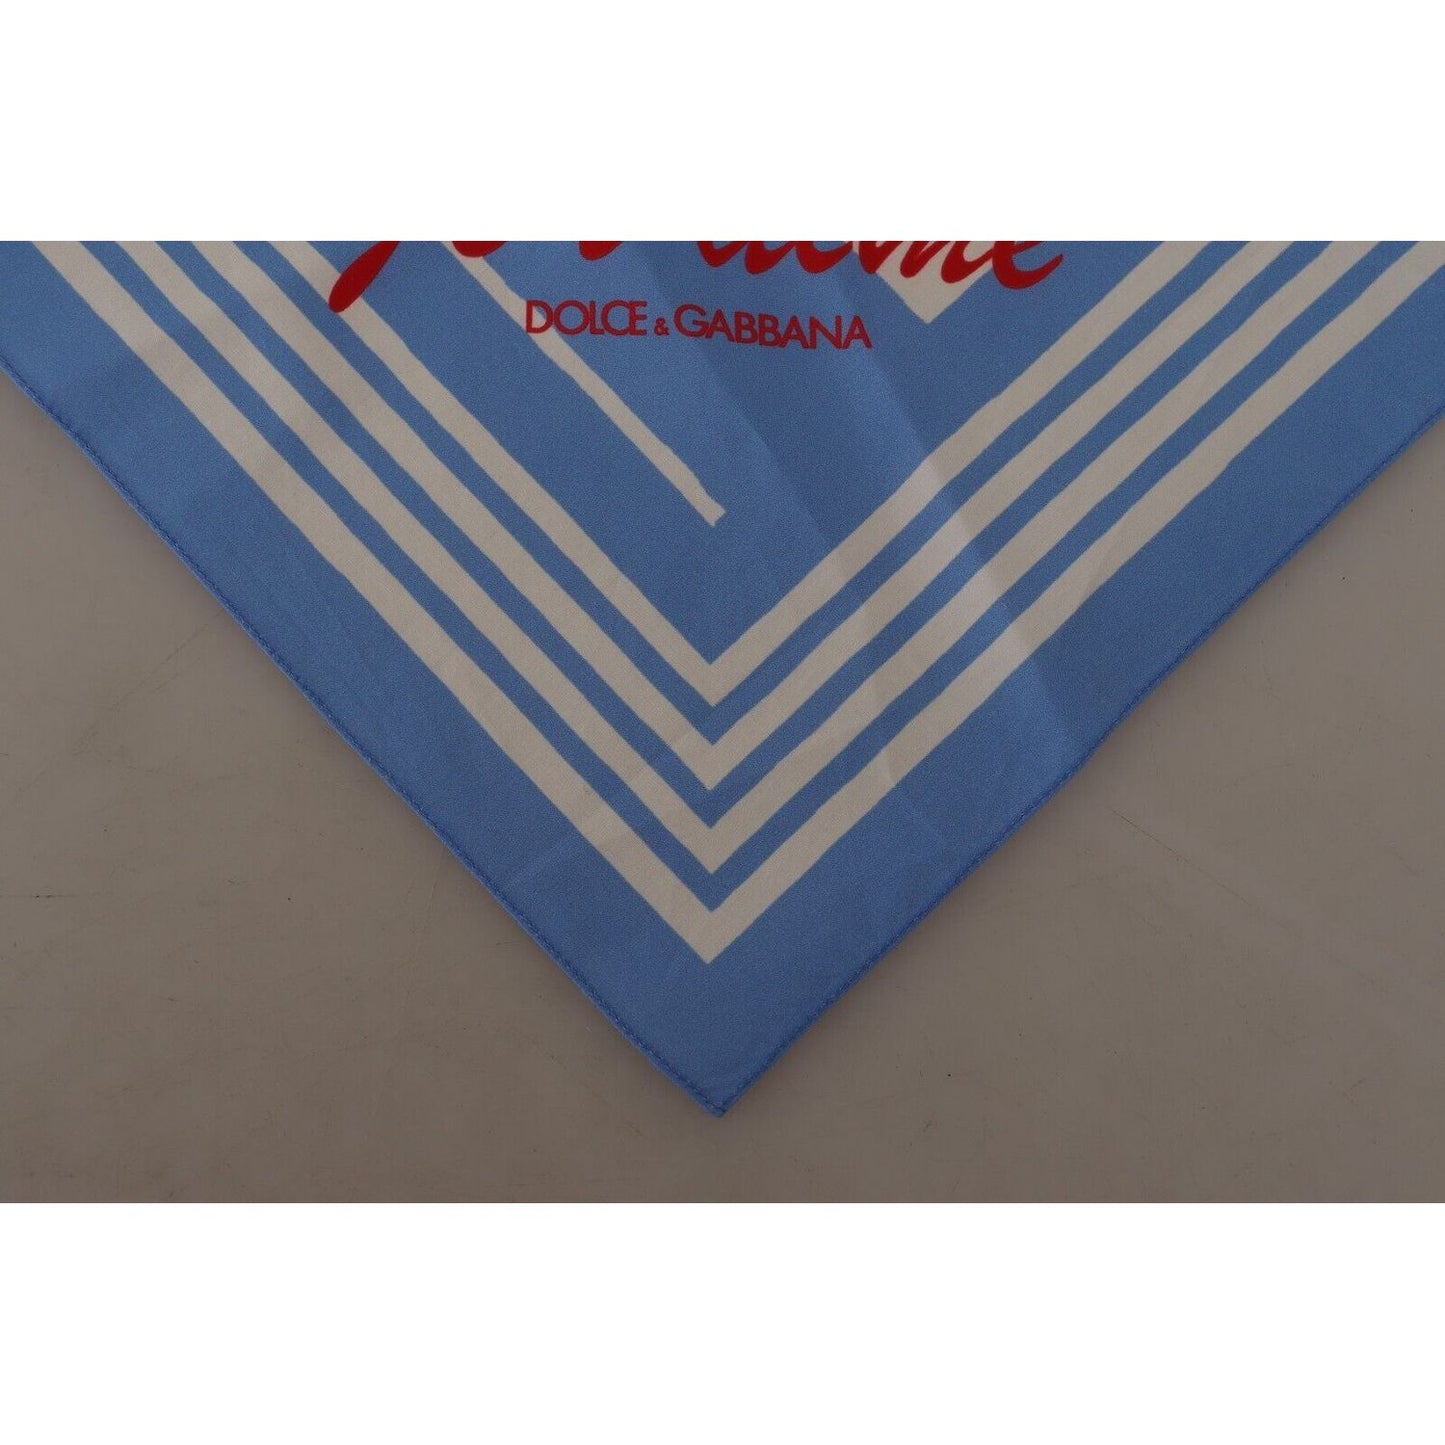 Dolce & Gabbana Elegant Striped Cotton Handkerchief blue-white-striped-st-tropez-handkerchief-scarf